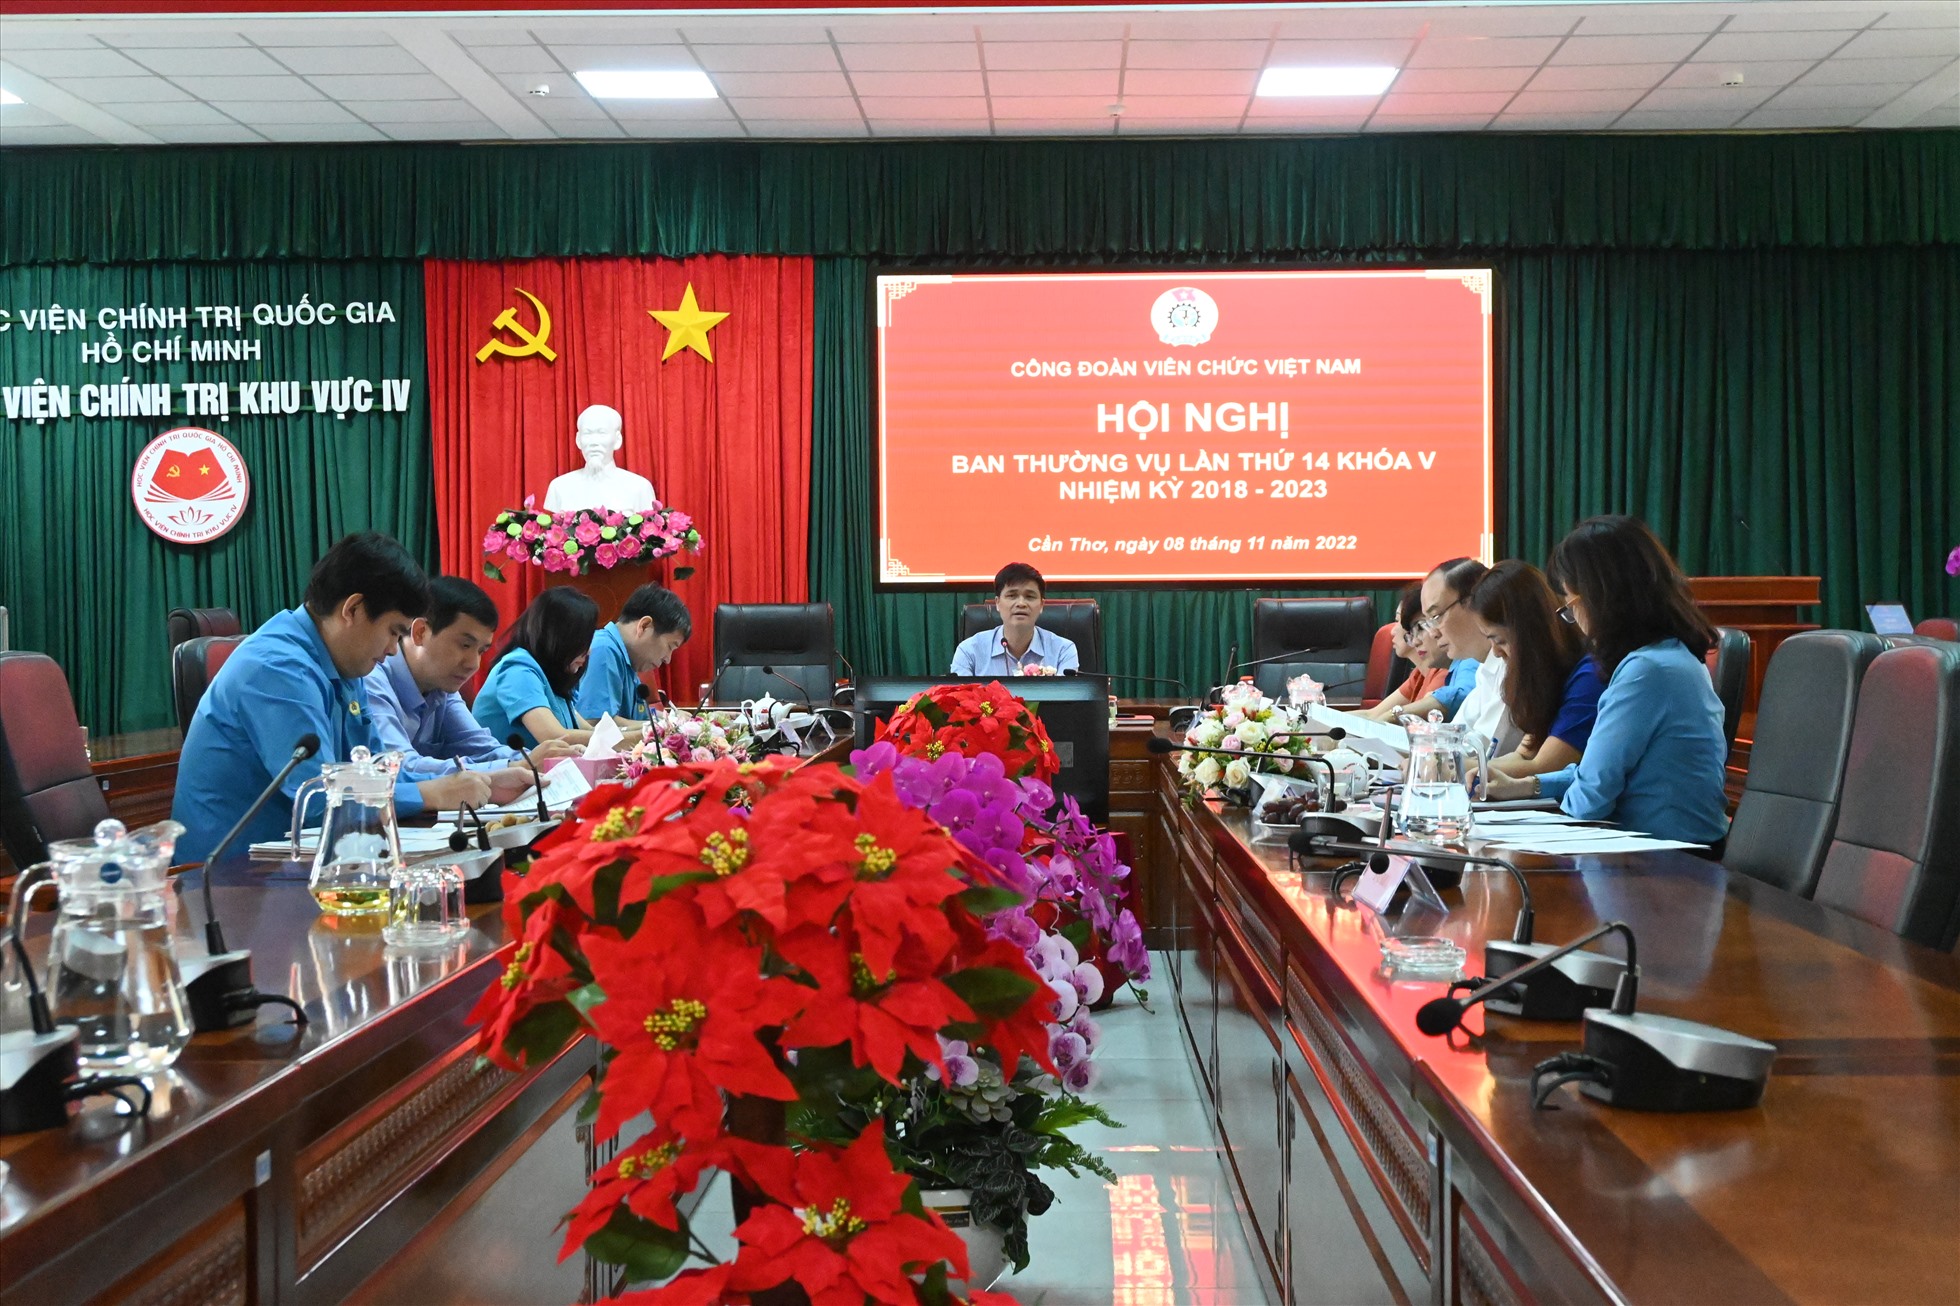 Quanh cảnh hội nghị Ban Thường vụ Công đoàn Viên chức Việt Nam lần thứ 14, khóa V nhiệm kỳ 2018 - 2023. Ảnh: Th.N